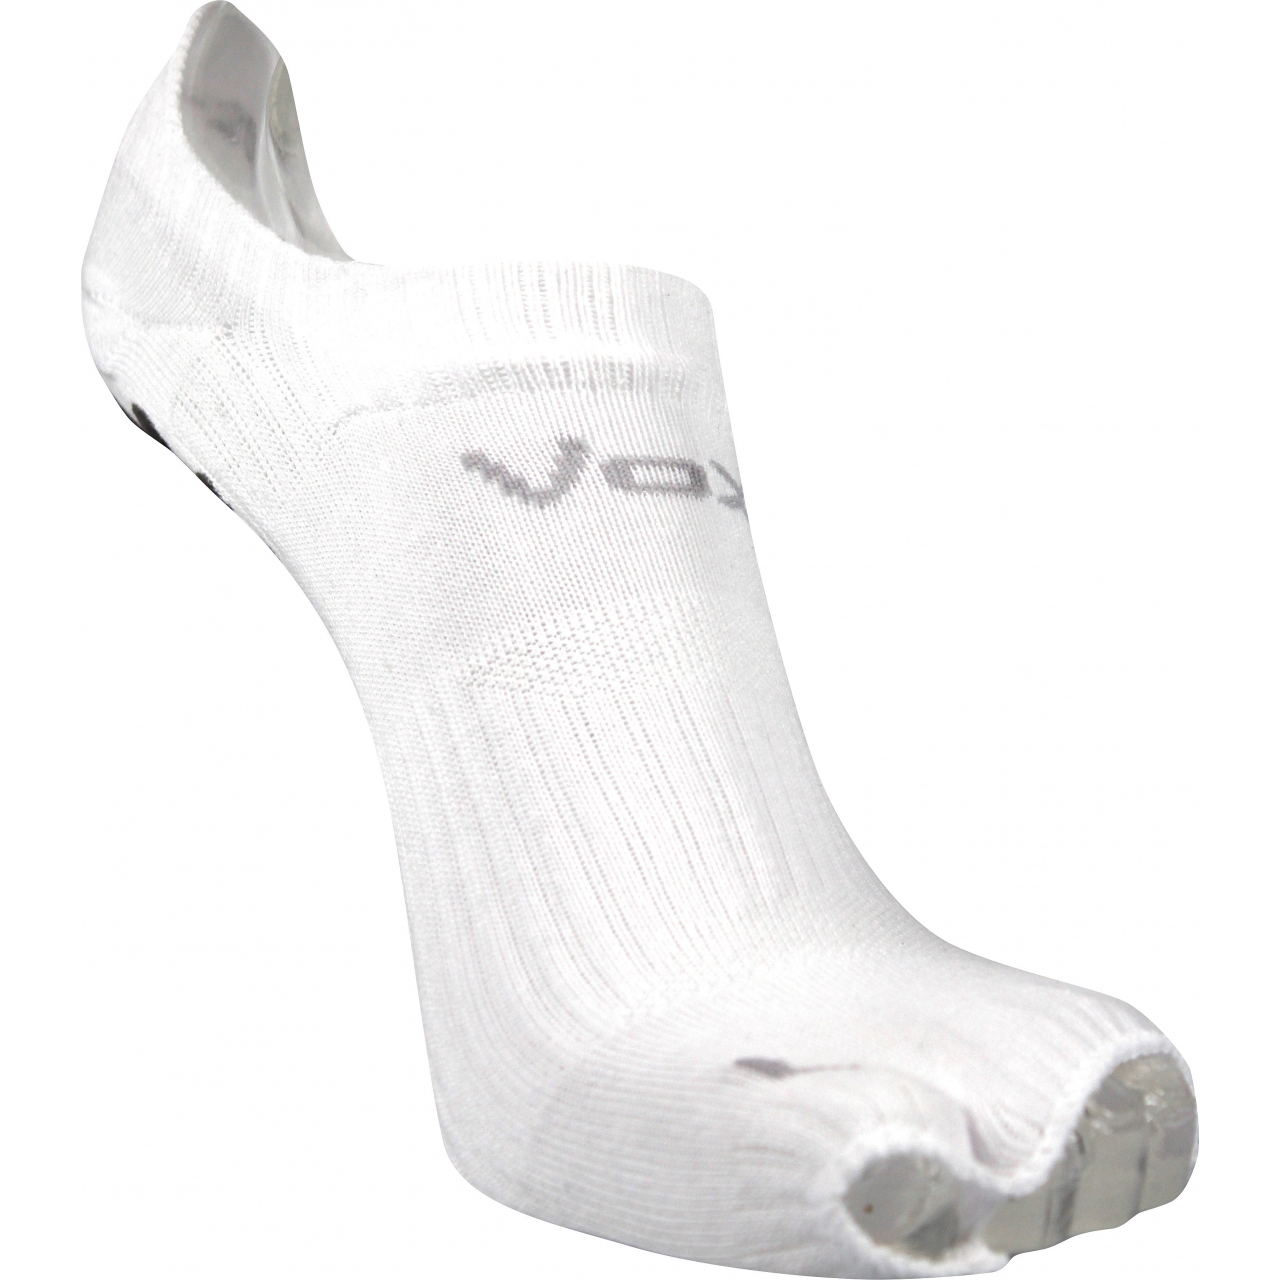 Ponožky sportovní unisex Voxx Joga B - bílé, 39-42